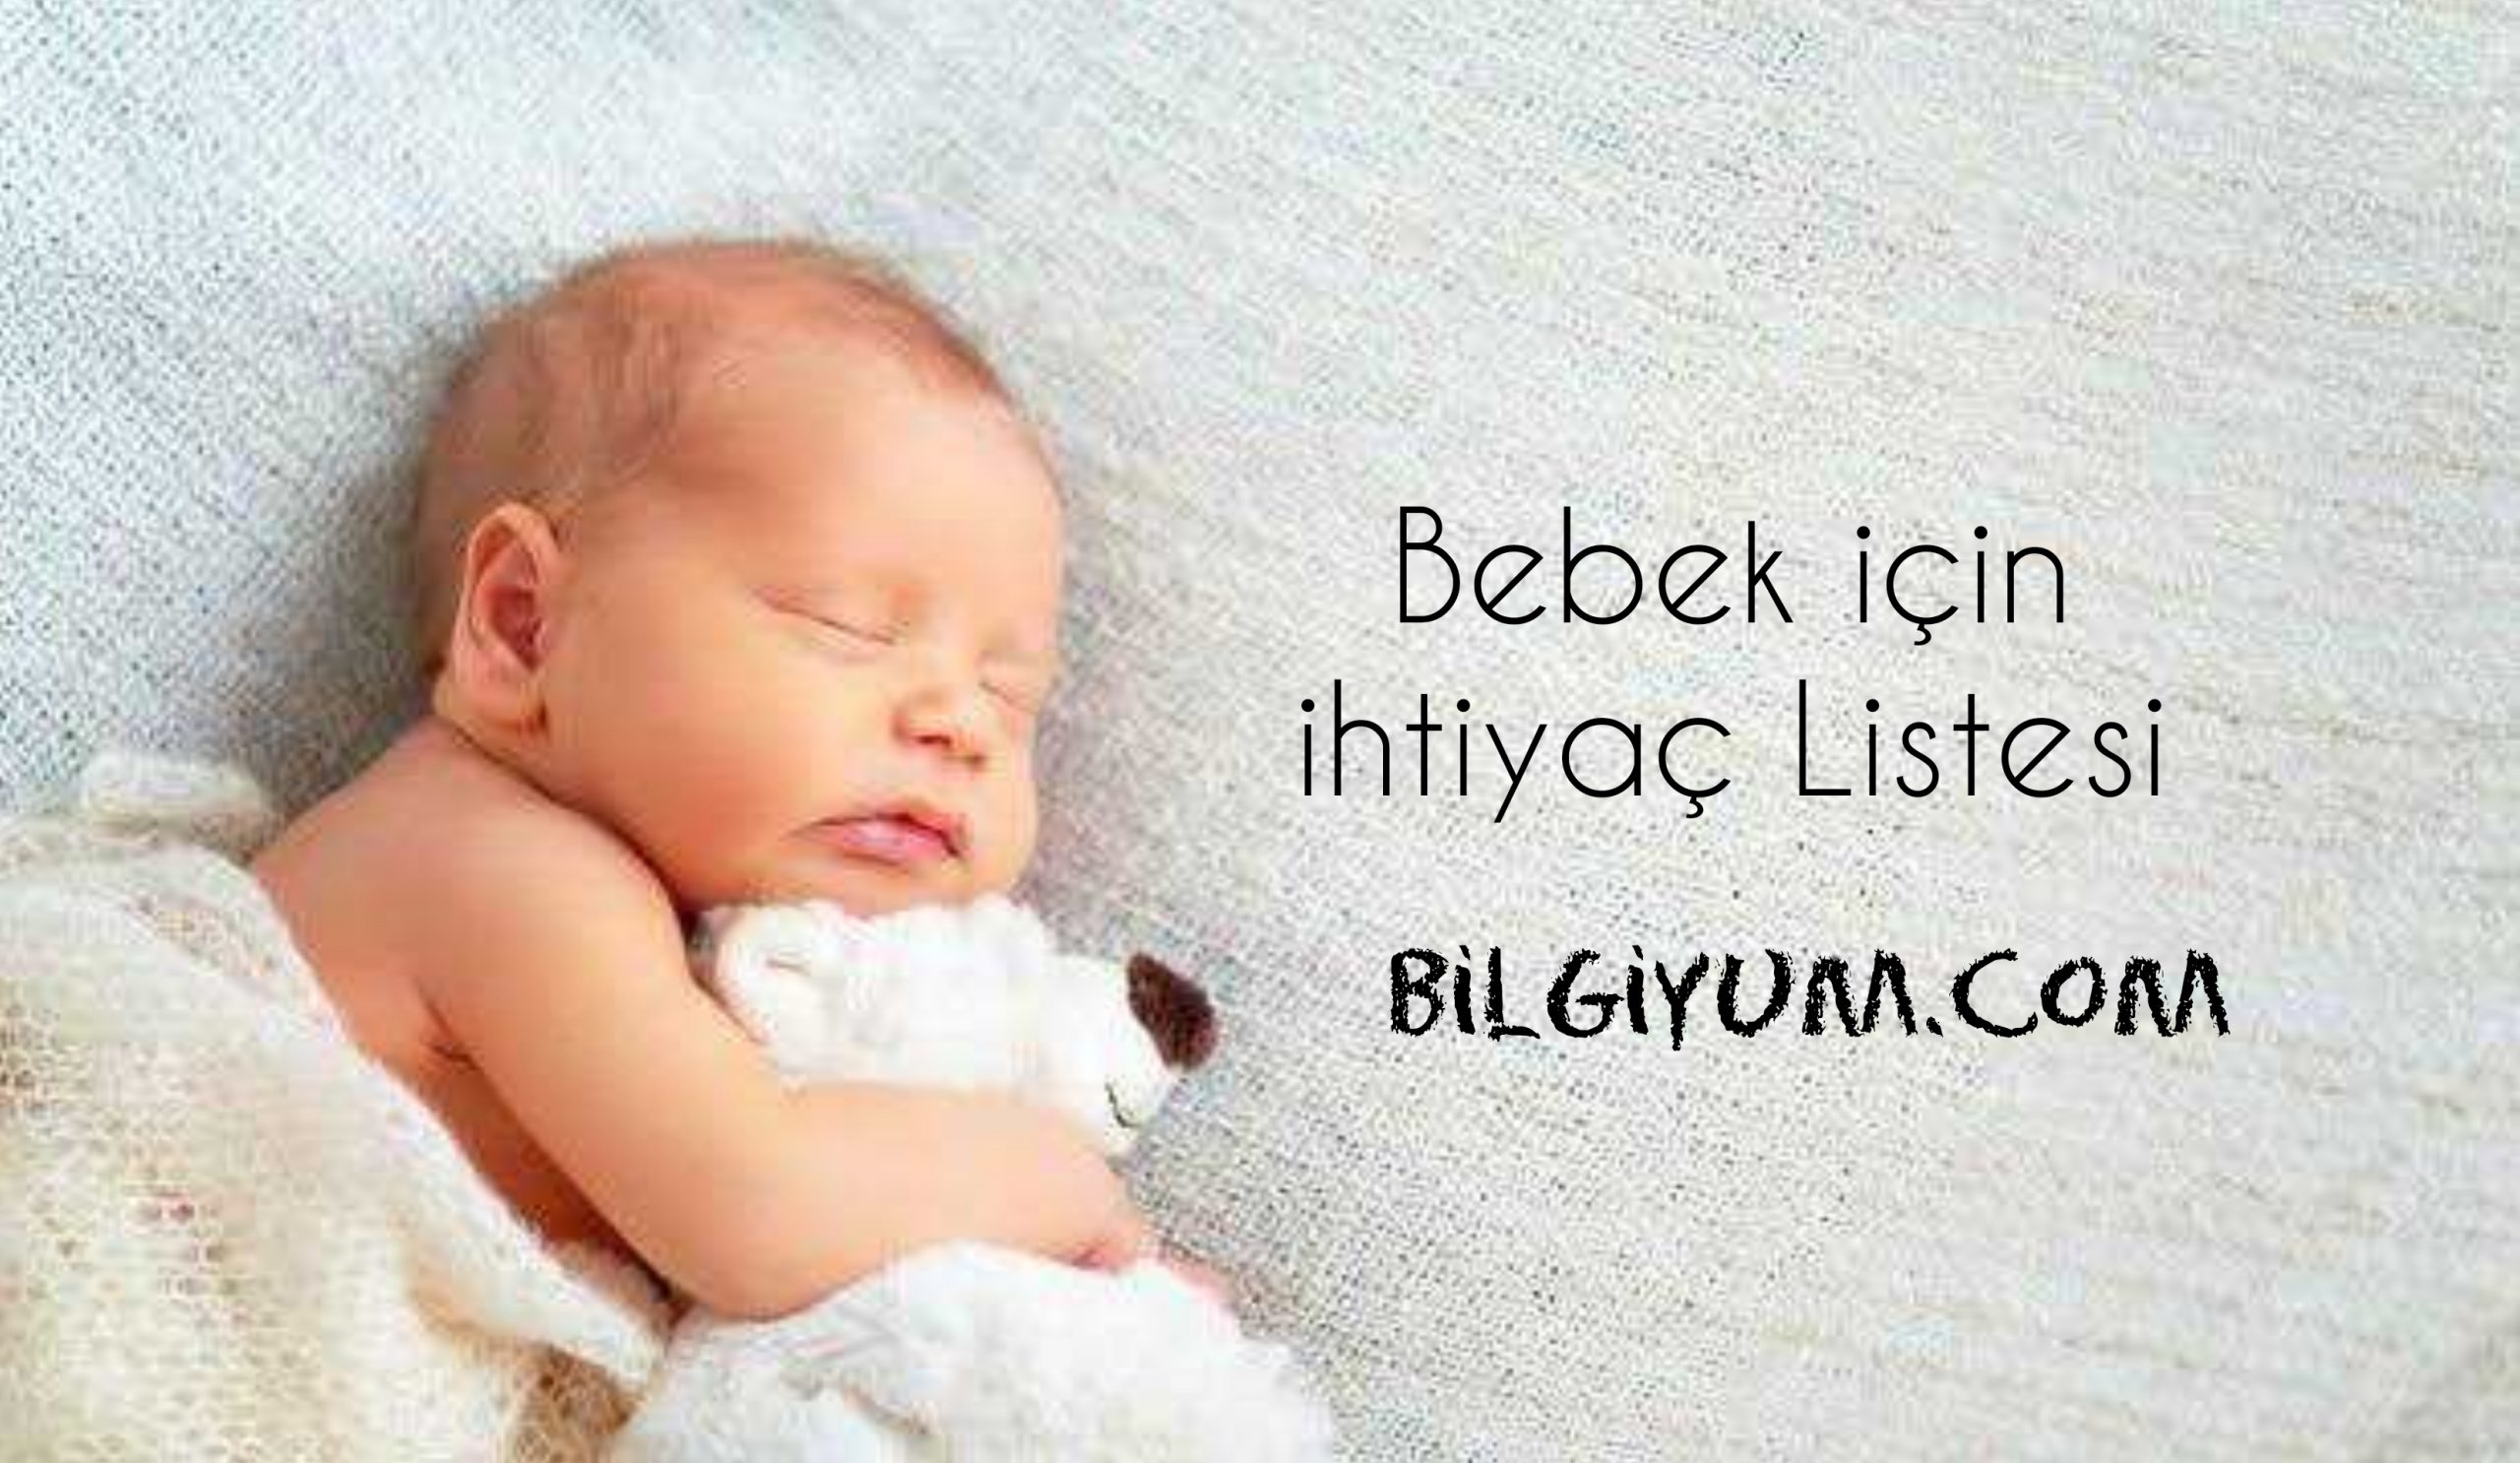 Bebek için ihtiyaç listesi